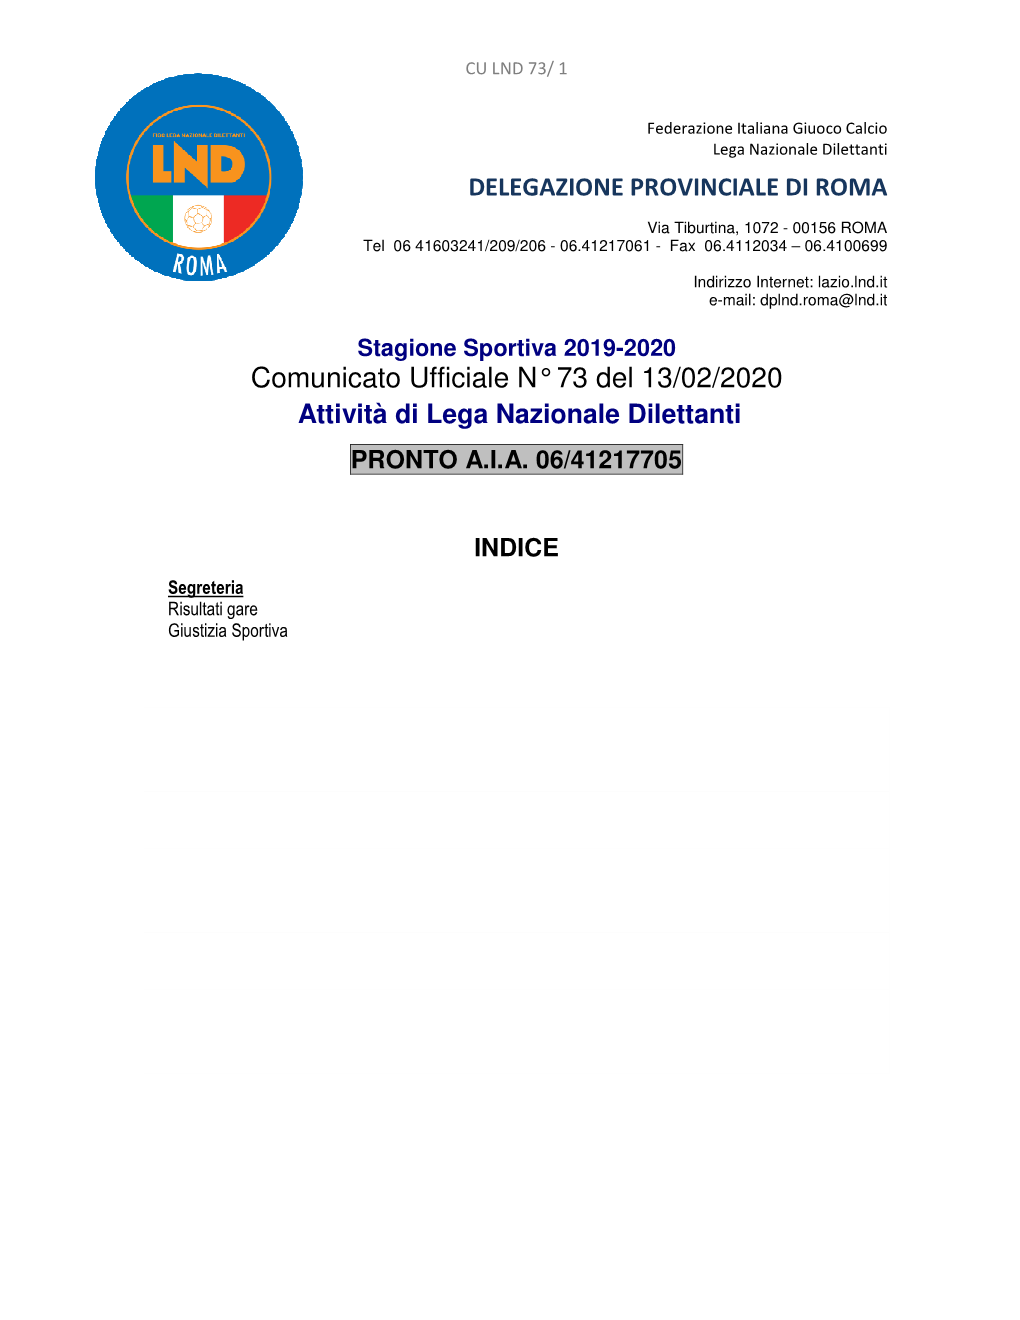 Comunicato Ufficiale N° 73 Del 13/02/2020 Attività Di Lega Nazionale Dilettanti PRONTO A.I.A